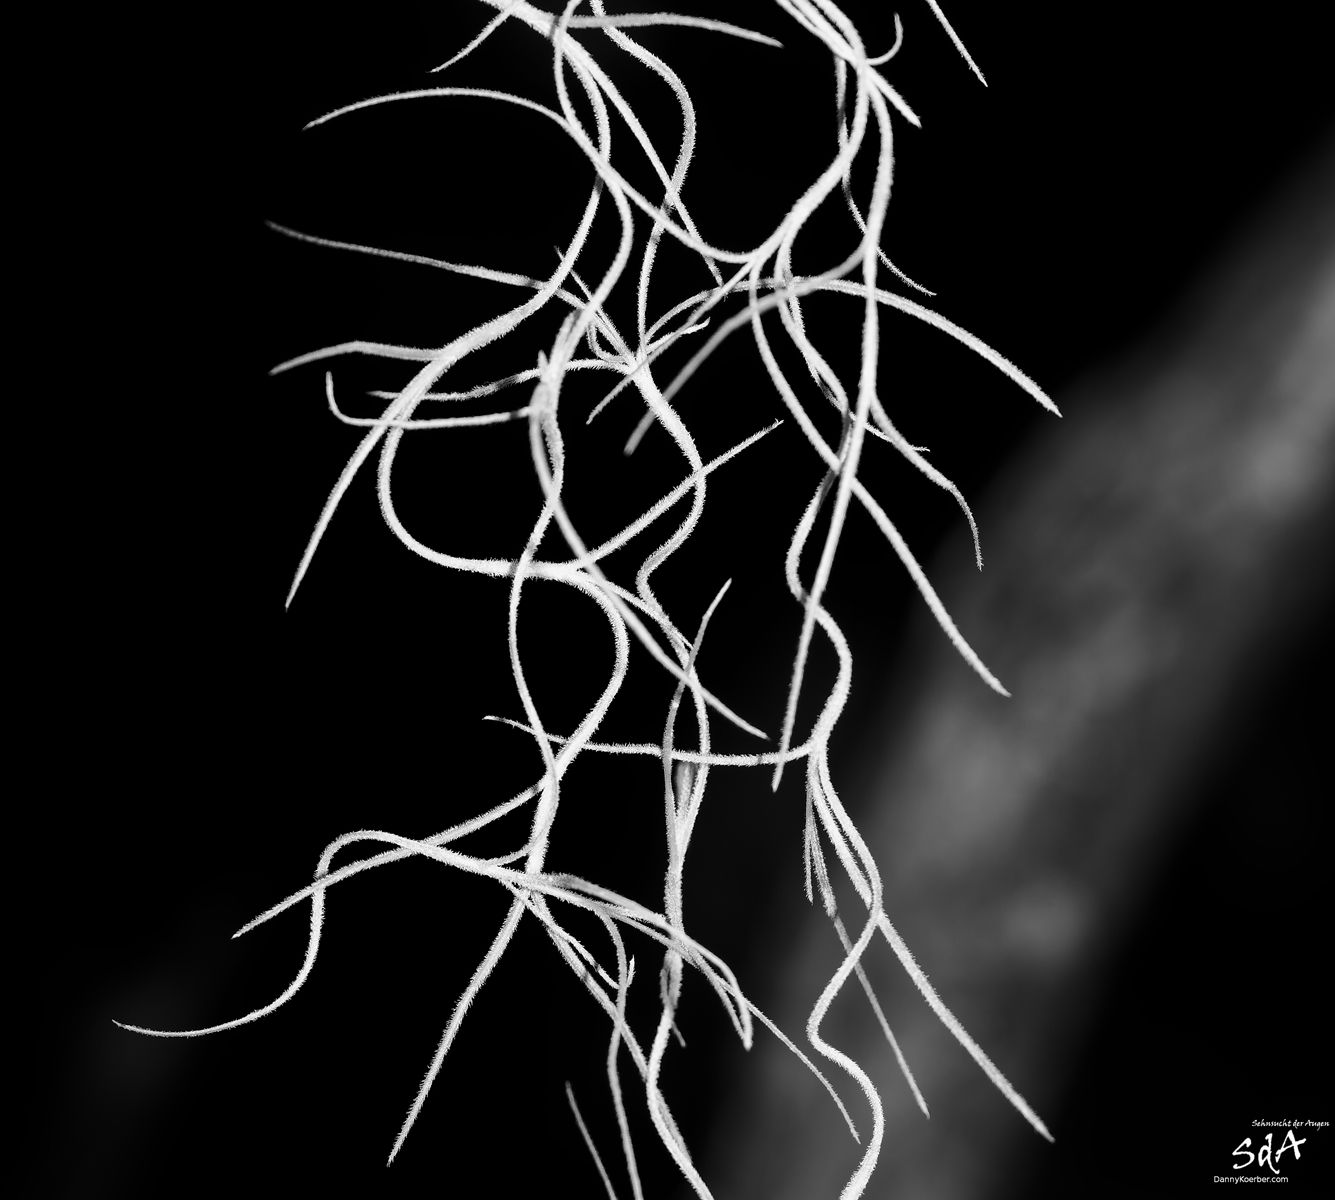 Wurzelgeflecht in schwarz weiß, fotografiert für Pflanzen von Danny Koerber für Sehnsucht der Augen.